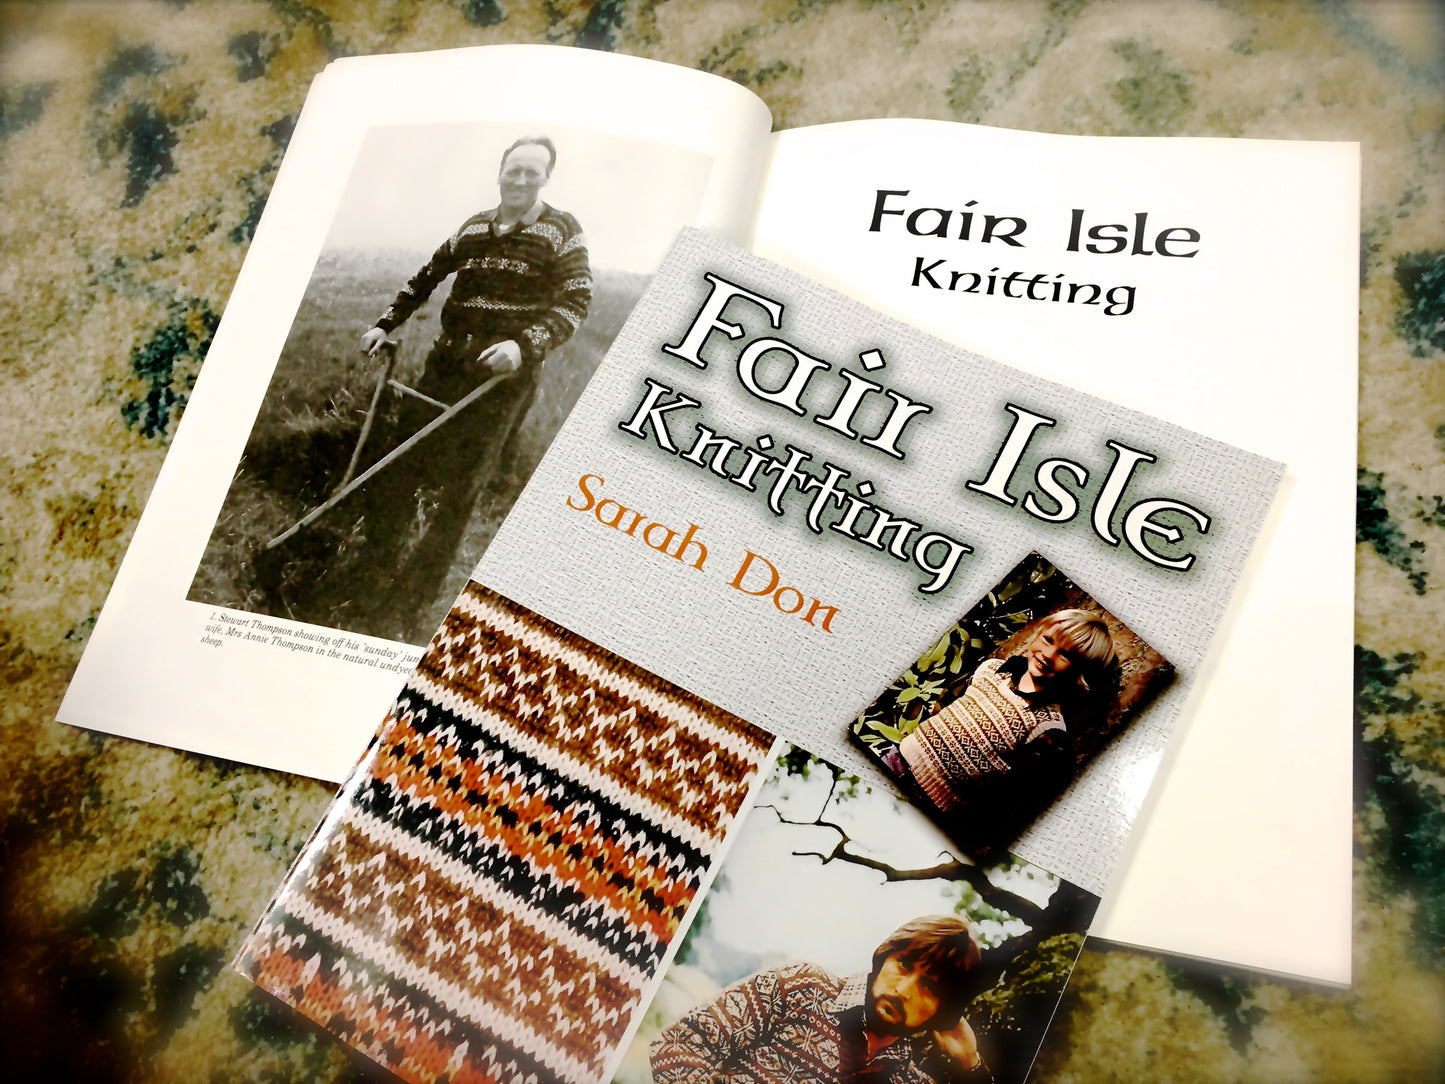 Fair Isle Knitting by Sarah Don